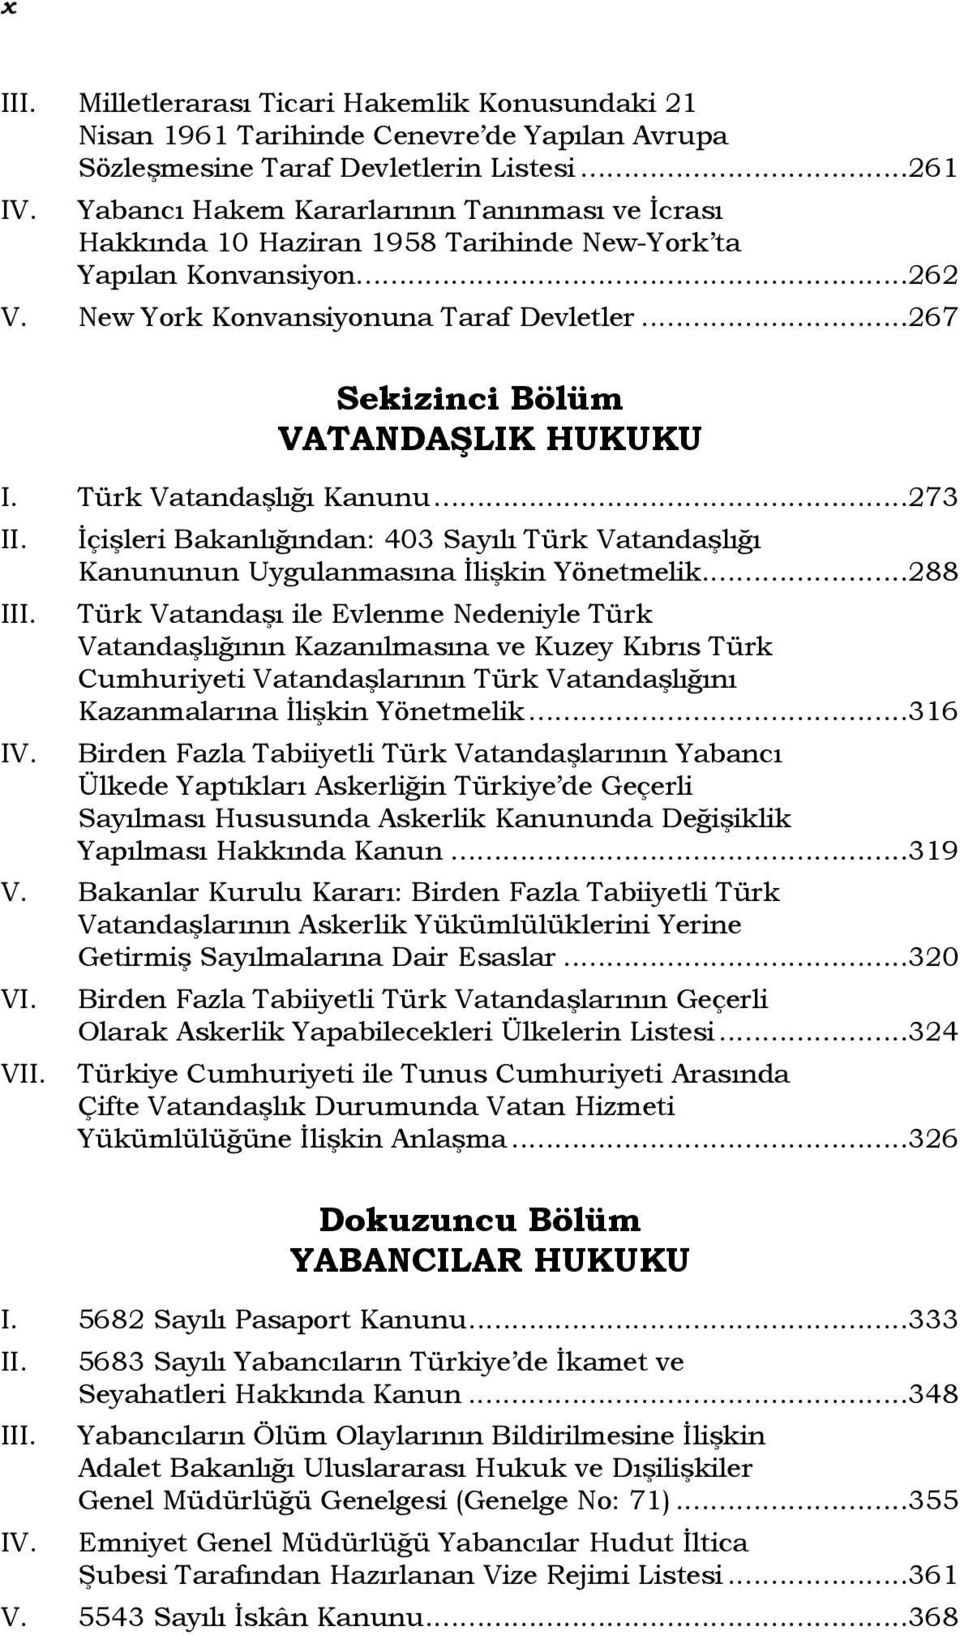 ..267 Sekizinci Bölüm VATANDAŞLIK HUKUKU I. Türk Vatandaşlığı Kanunu...273 I VI. V İçişleri Bakanlığından: 403 Sayılı Türk Vatandaşlığı Kanununun Uygulanmasına İlişkin Yönetmelik.